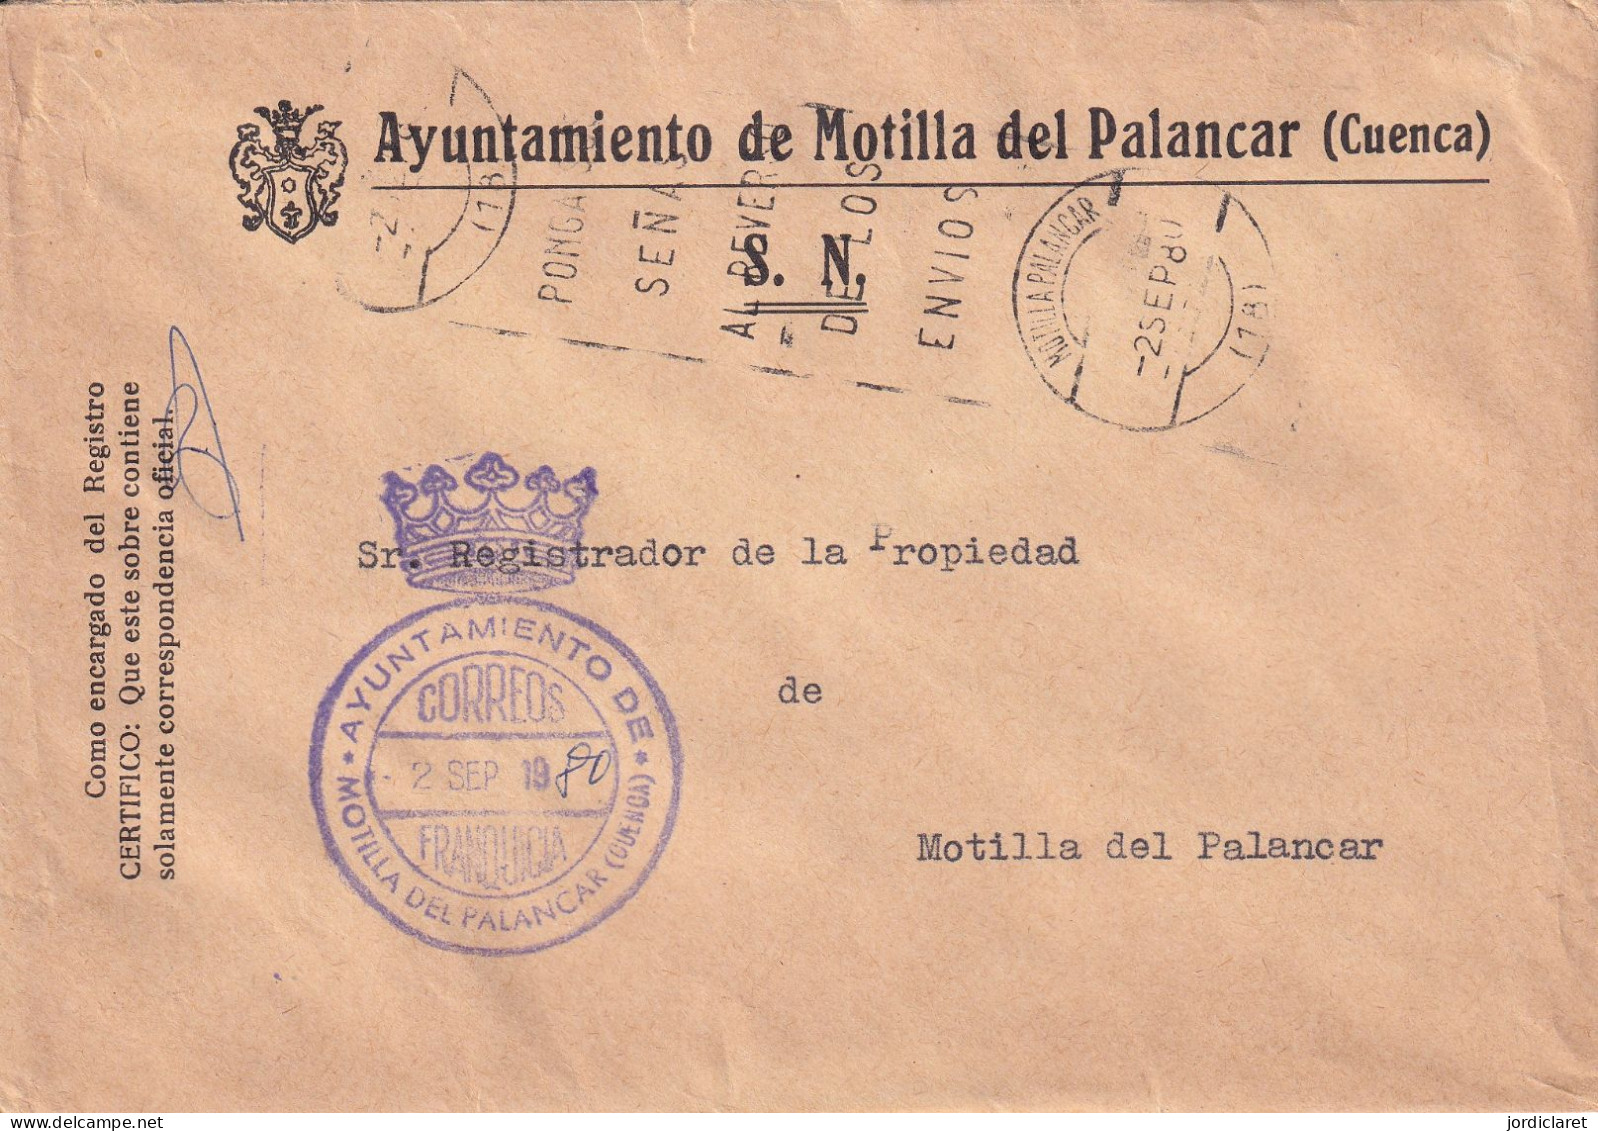 AYUNTAMIENTO  1980  MONTILLA DEL PALANCAR  CUENCA - Postage Free